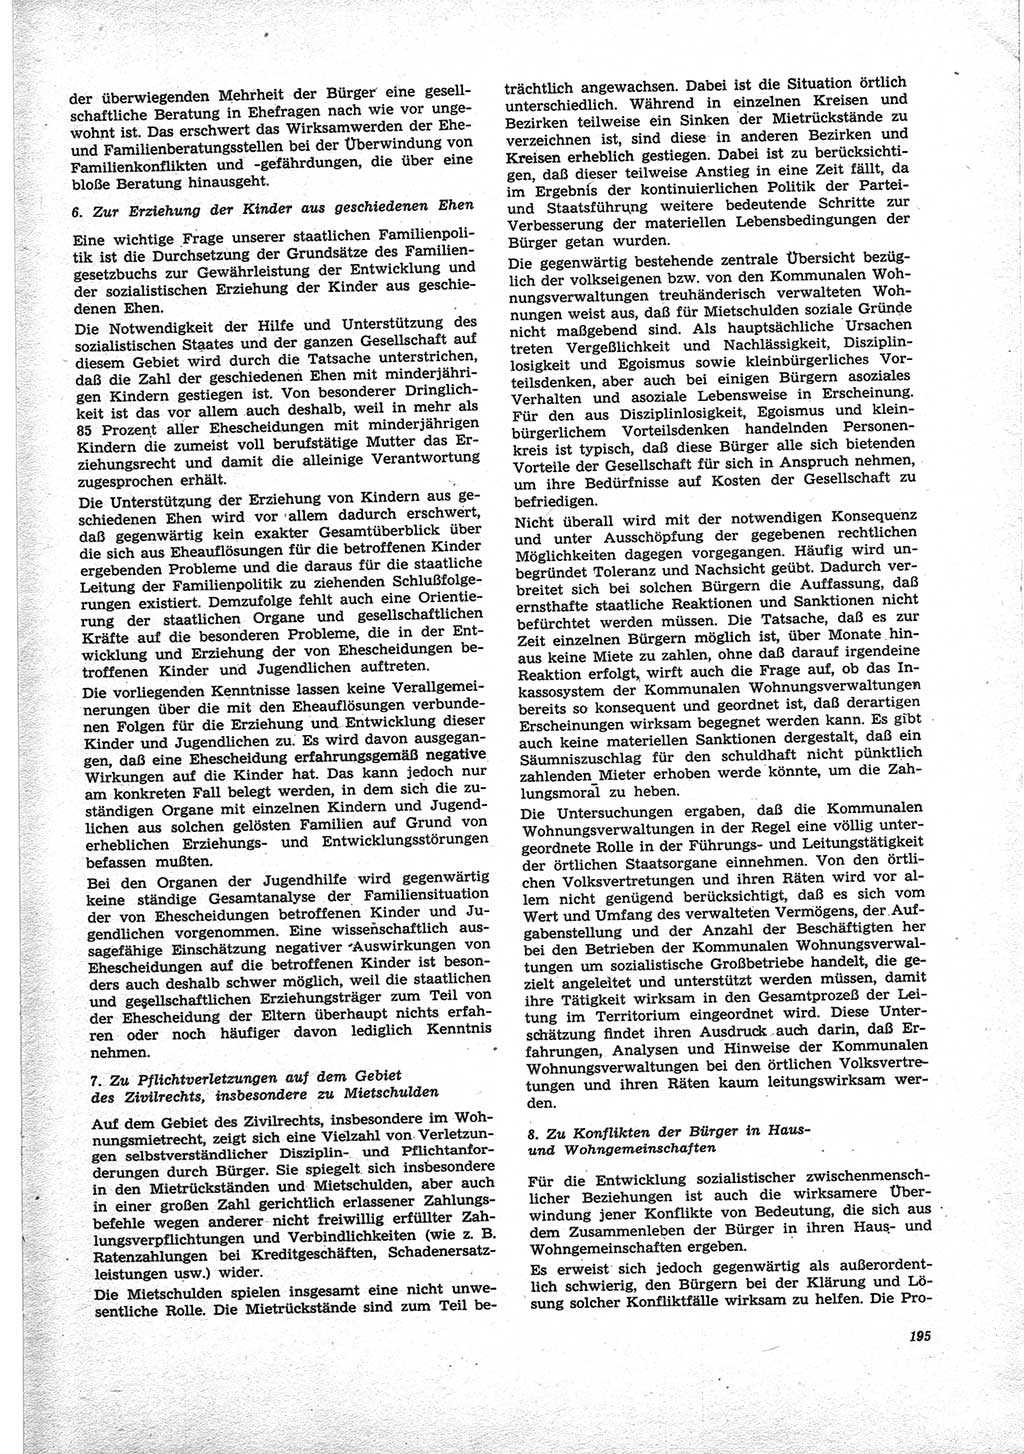 Neue Justiz (NJ), Zeitschrift für Recht und Rechtswissenschaft [Deutsche Demokratische Republik (DDR)], 25. Jahrgang 1971, Seite 195 (NJ DDR 1971, S. 195)